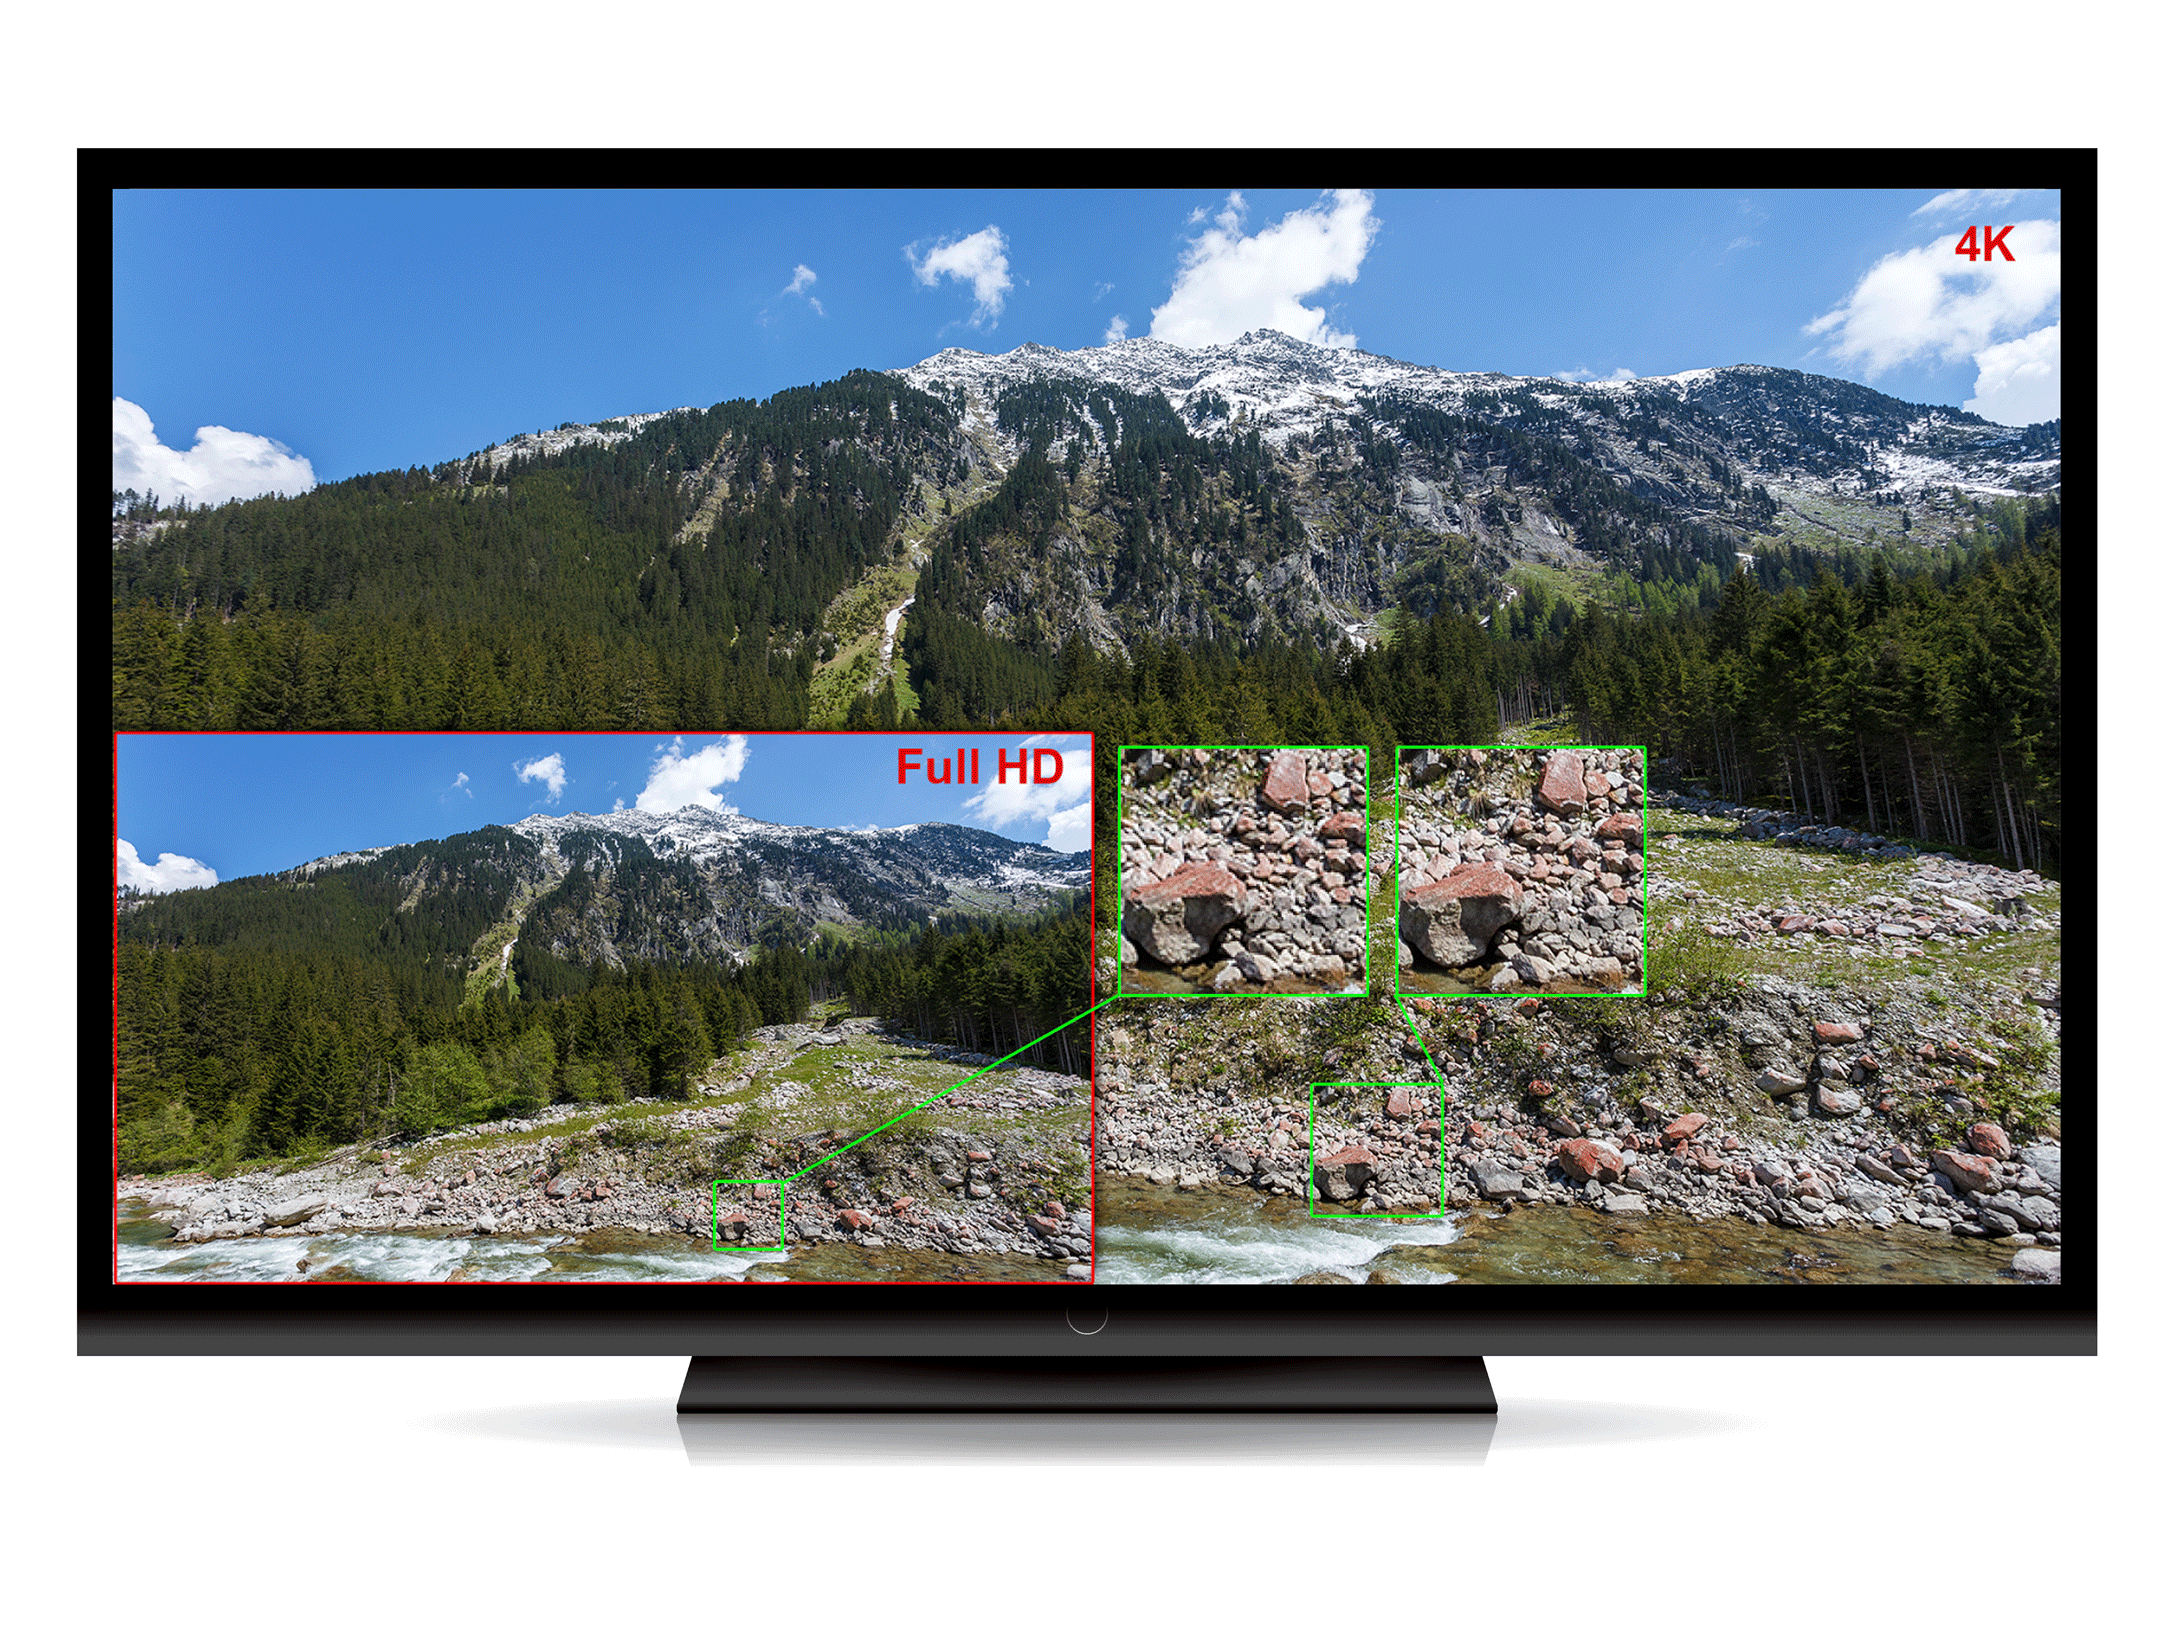 Hva er Ultra HD og 4K? | Digital-foto.no